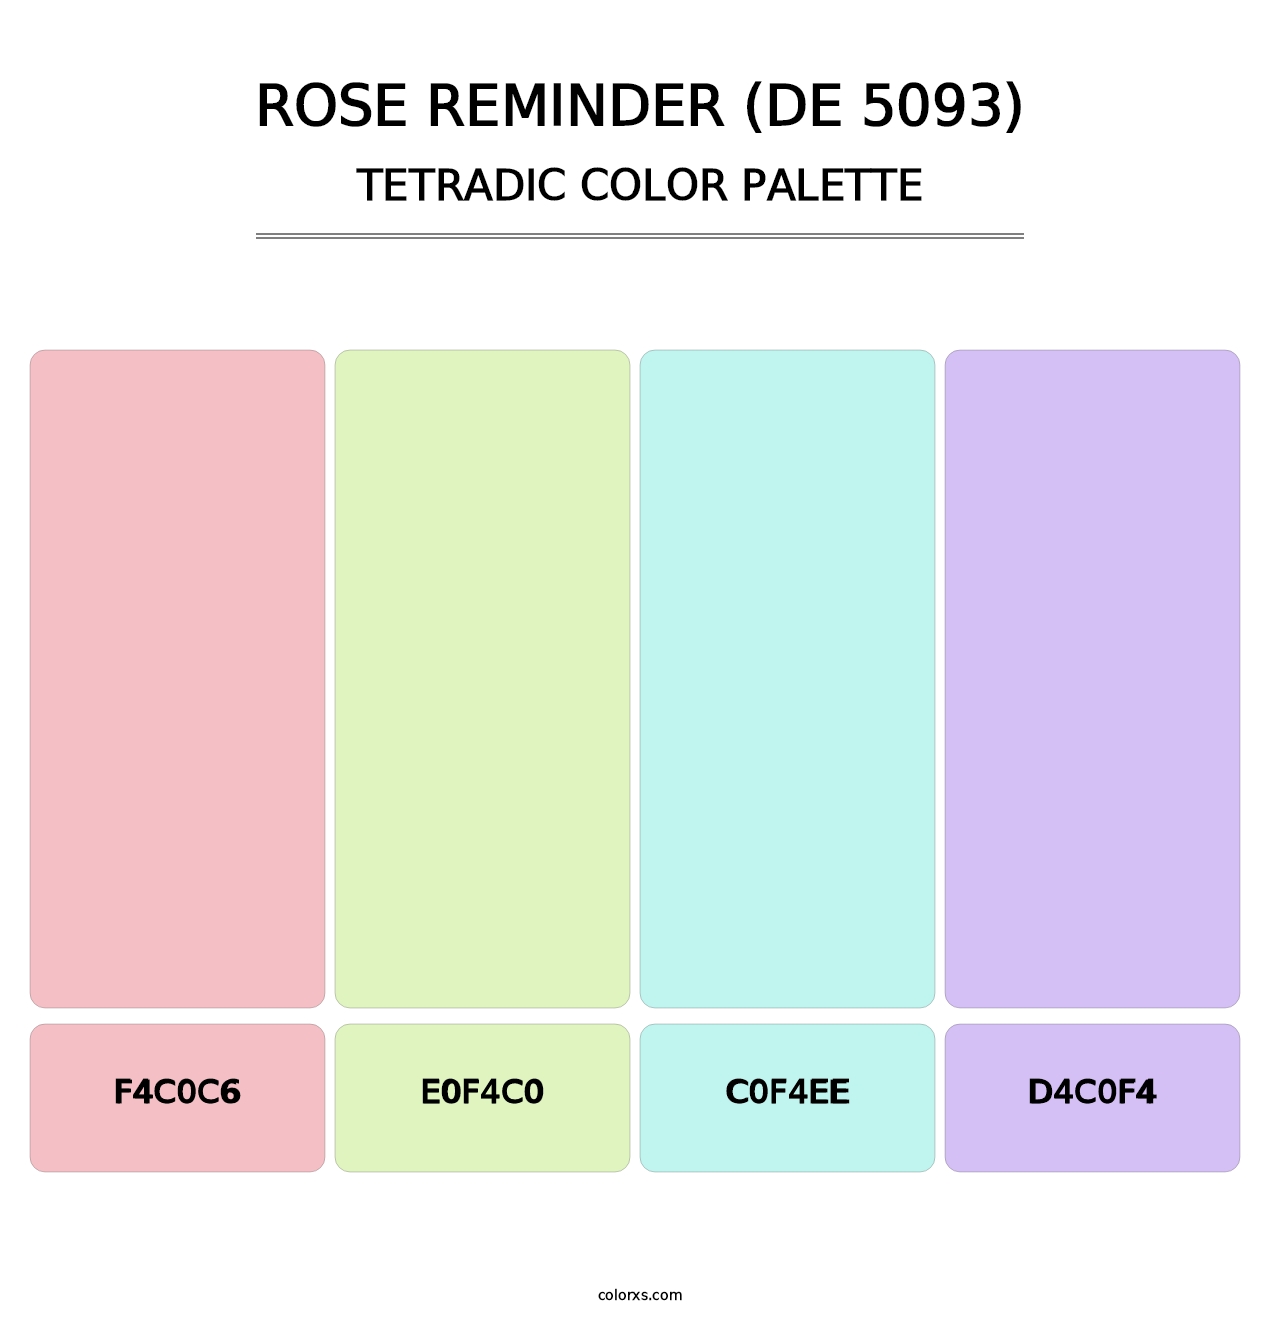 Rose Reminder (DE 5093) - Tetradic Color Palette